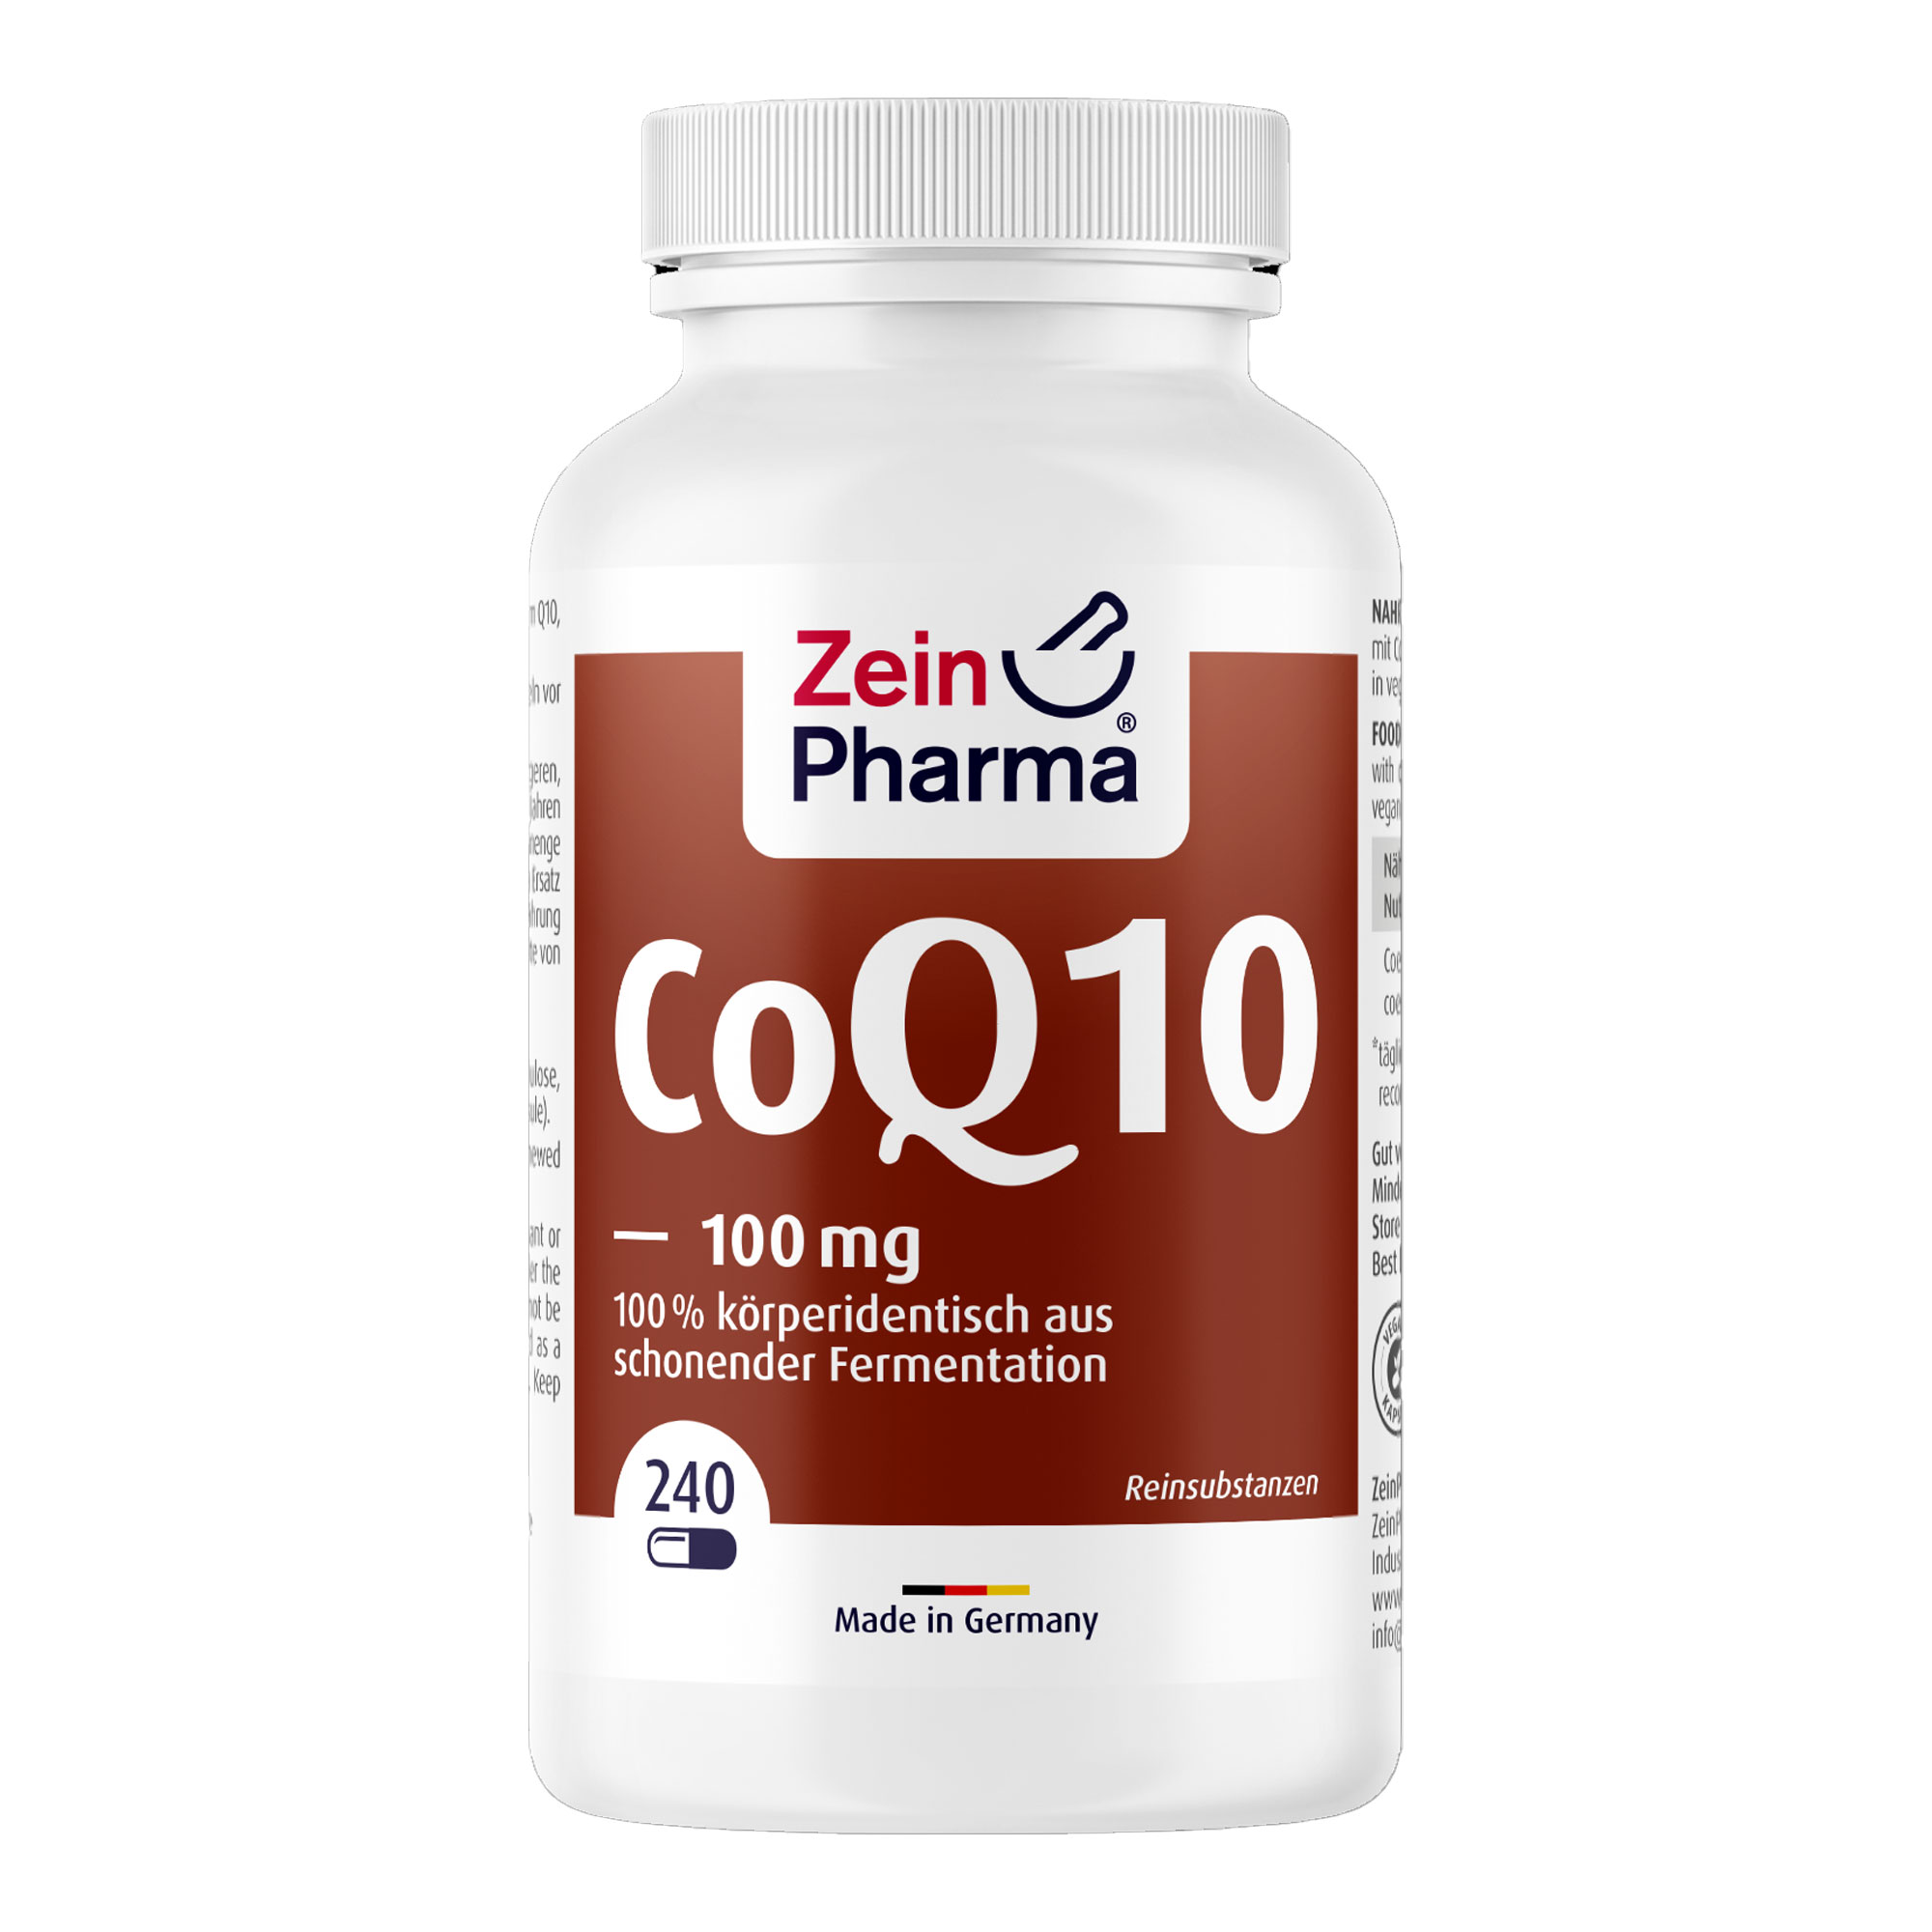 Nahrungsergänzungsmittel mit Coenzym Q10 aus natürlicher Fermentation.